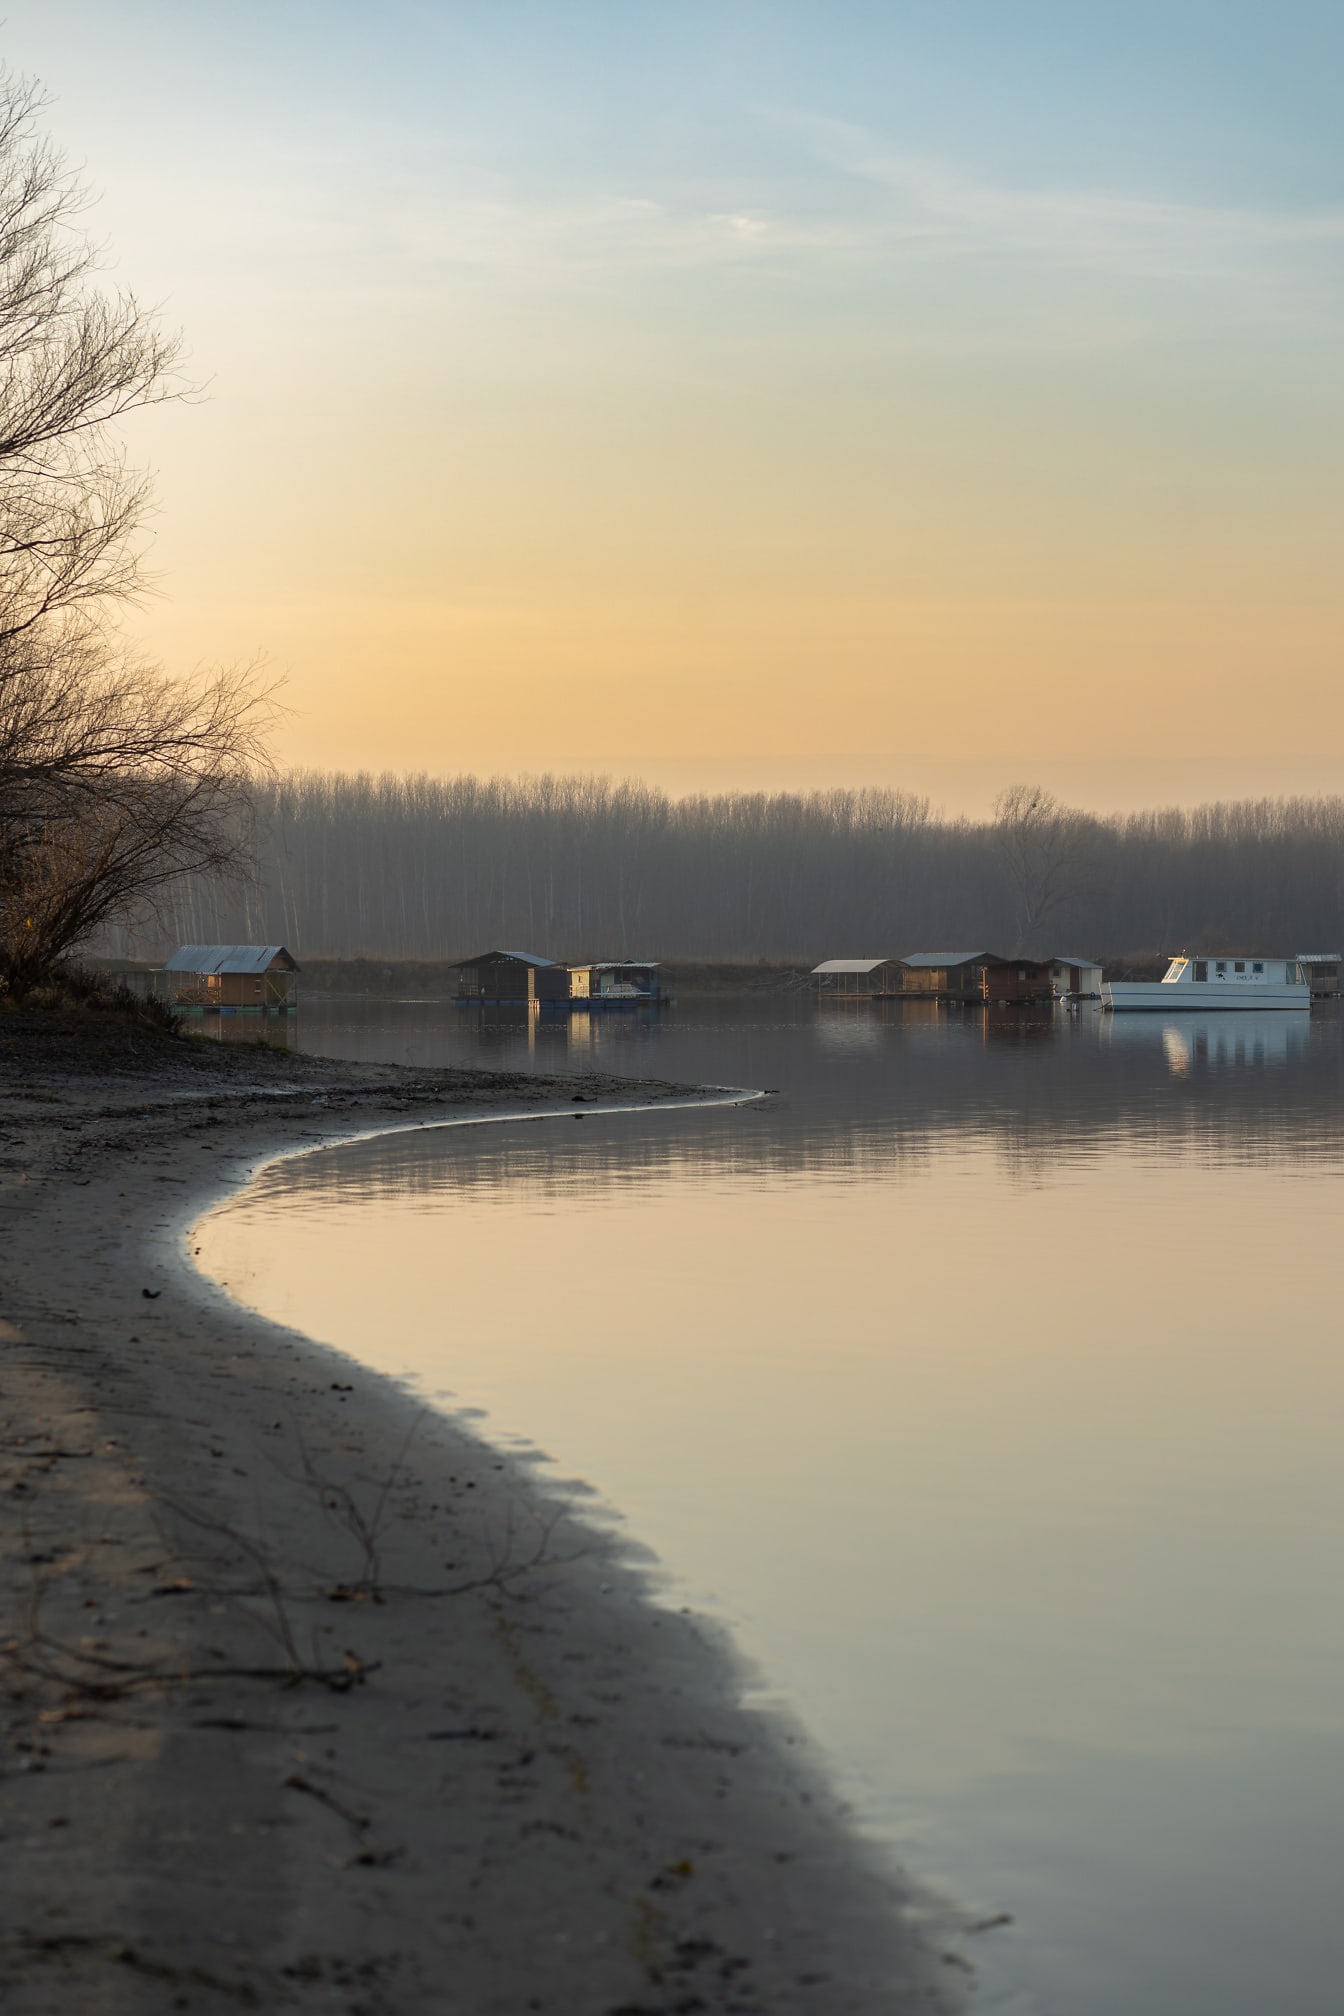 Rumah perahu di danau yang tenang di pagi hari